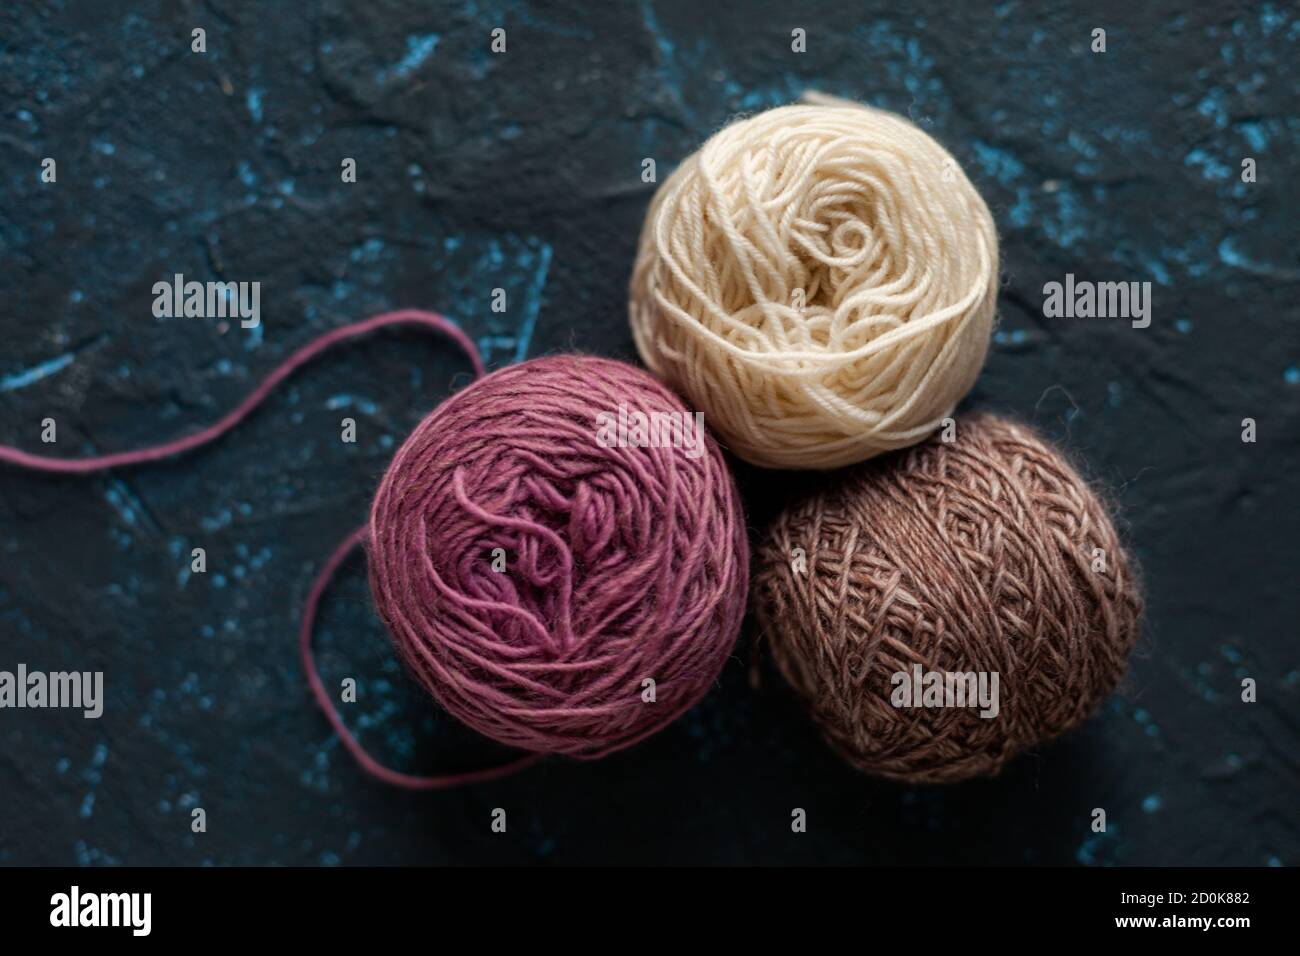 Trois boules de couleur beige rose brun pelote de fil de laine pour crochet et tricoter sur le béton de mastic bleu foncé. Mettre à plat l'image avec de l'espace pour le texte. Banque D'Images